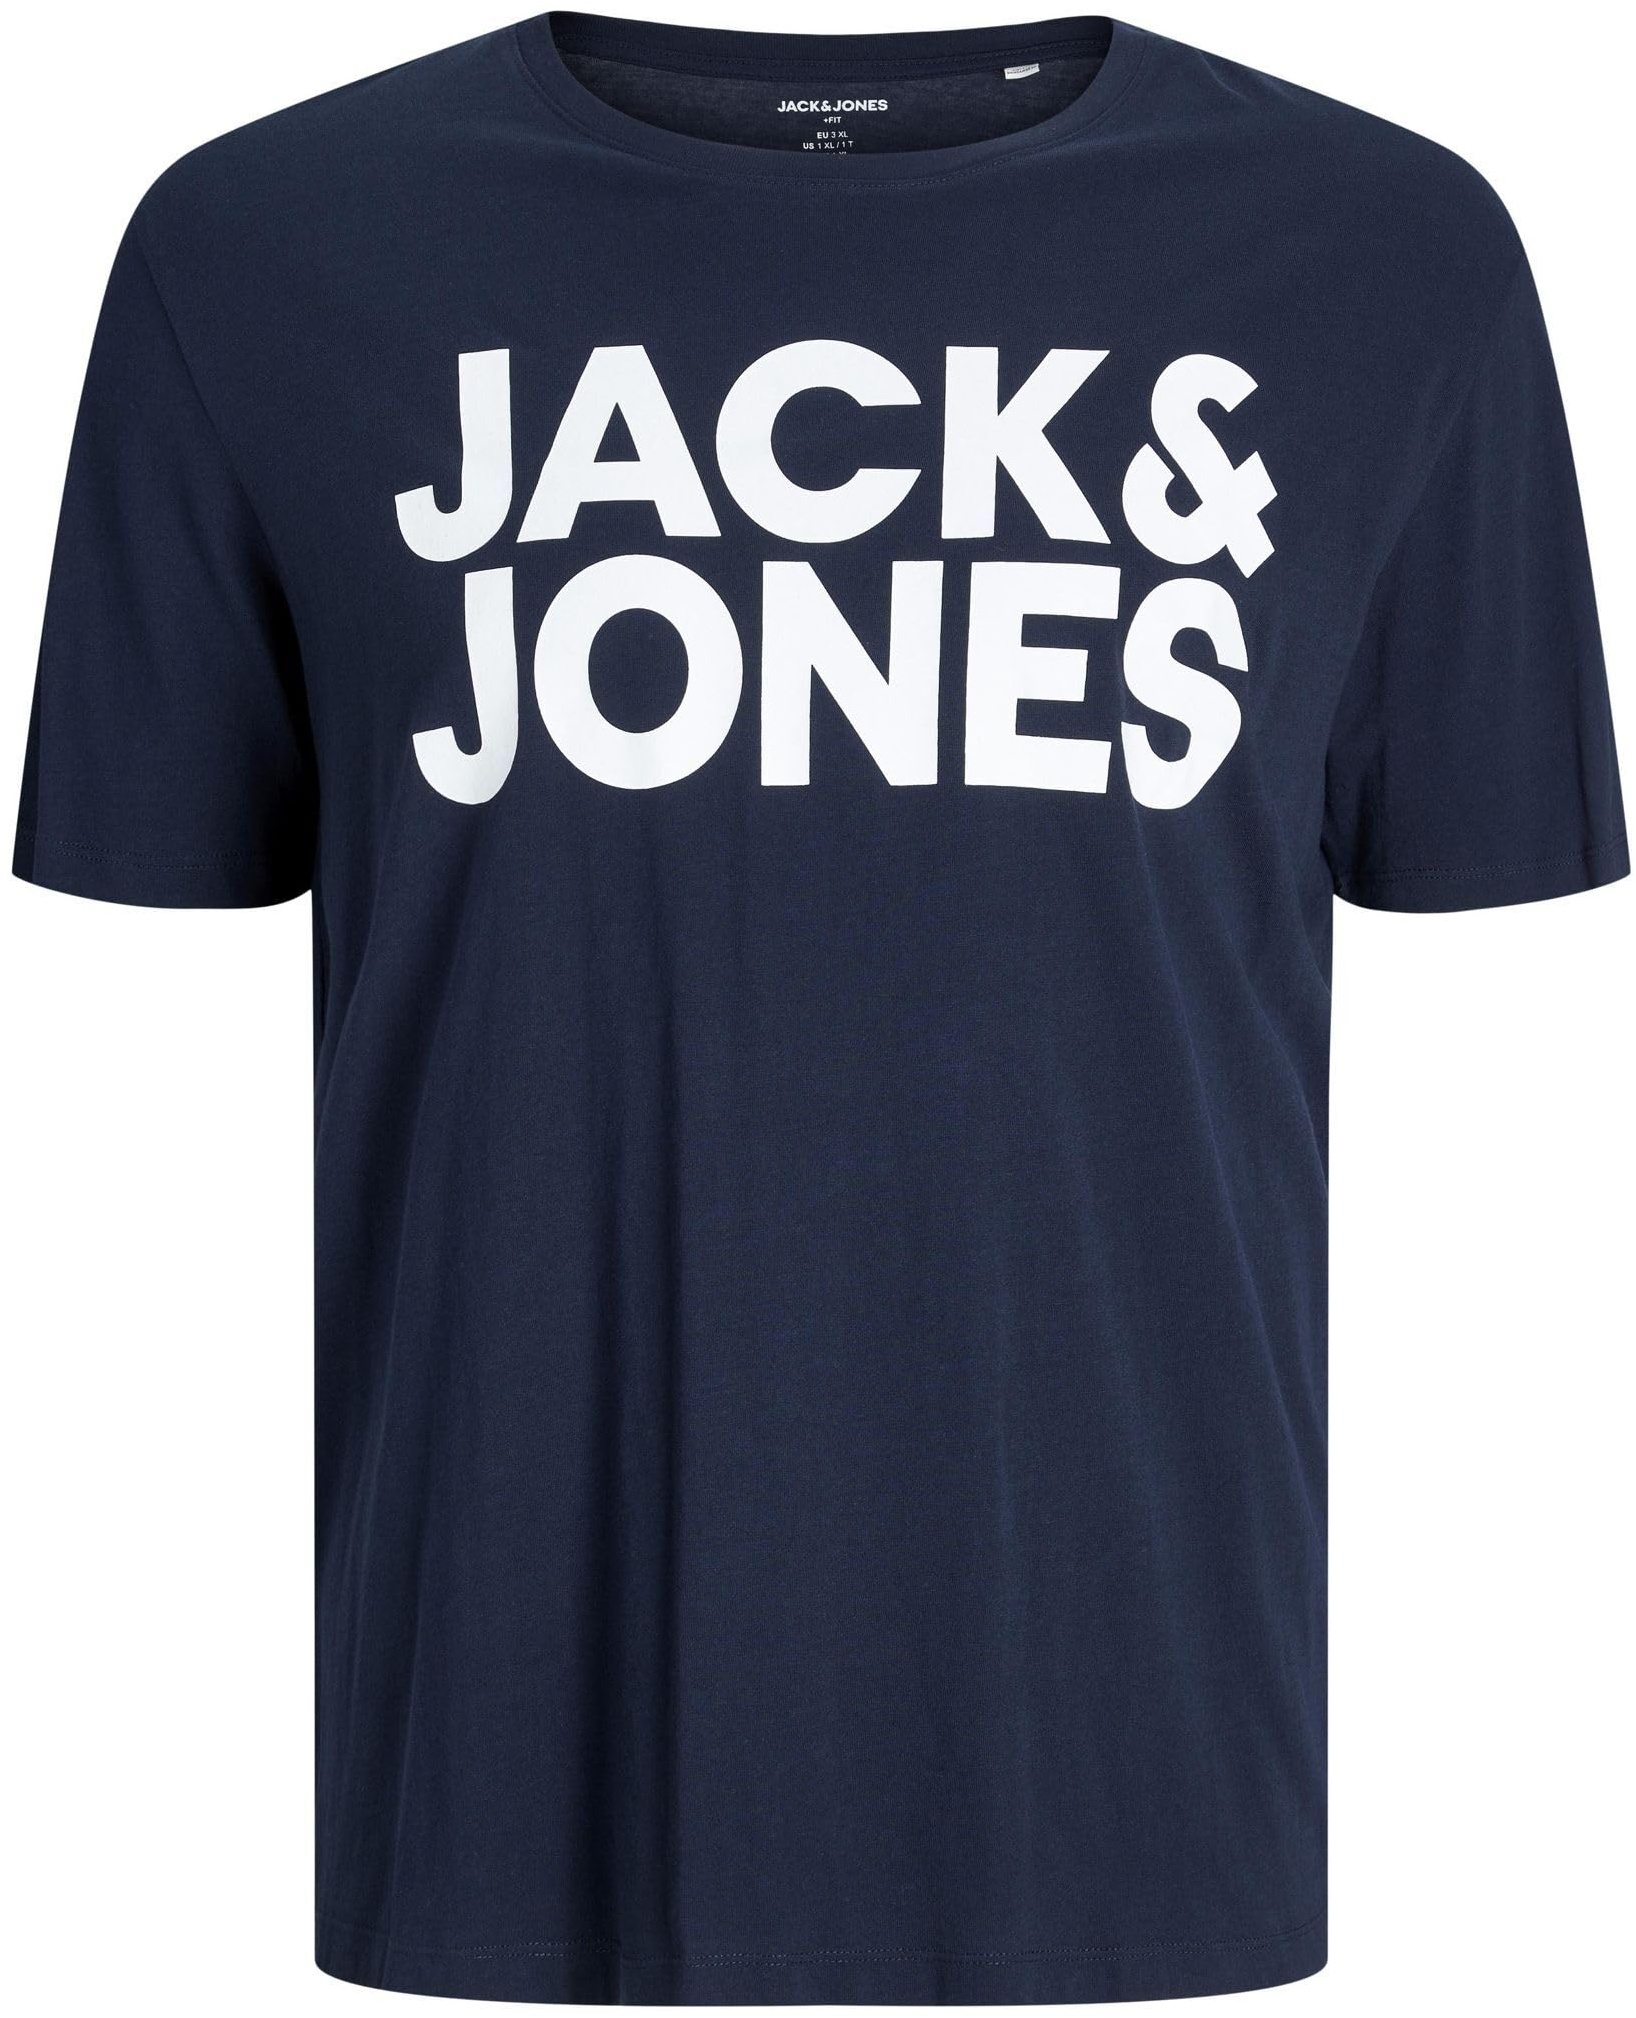 Herren Jack & Jones Logo T-Shirt Plus Size | Rundhals Kurzarm Shirt | Übergrößen Shortsleeve JJECORP, Farben:Navy, Größe:3XL